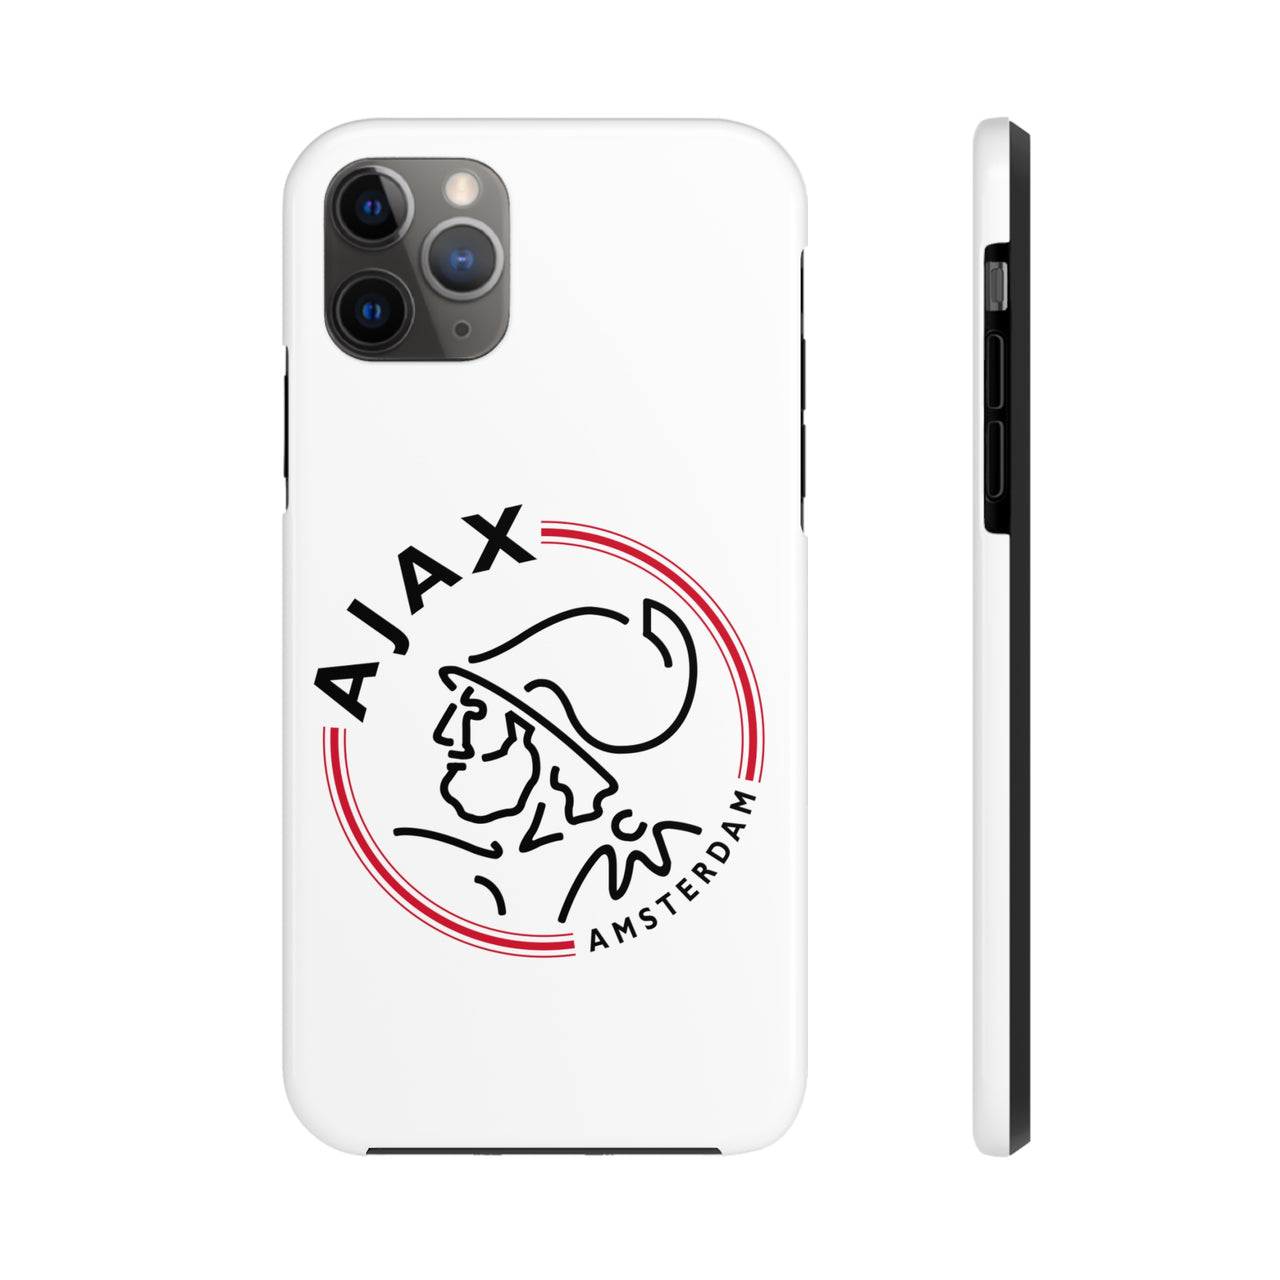 Ajax Tough Phone Case